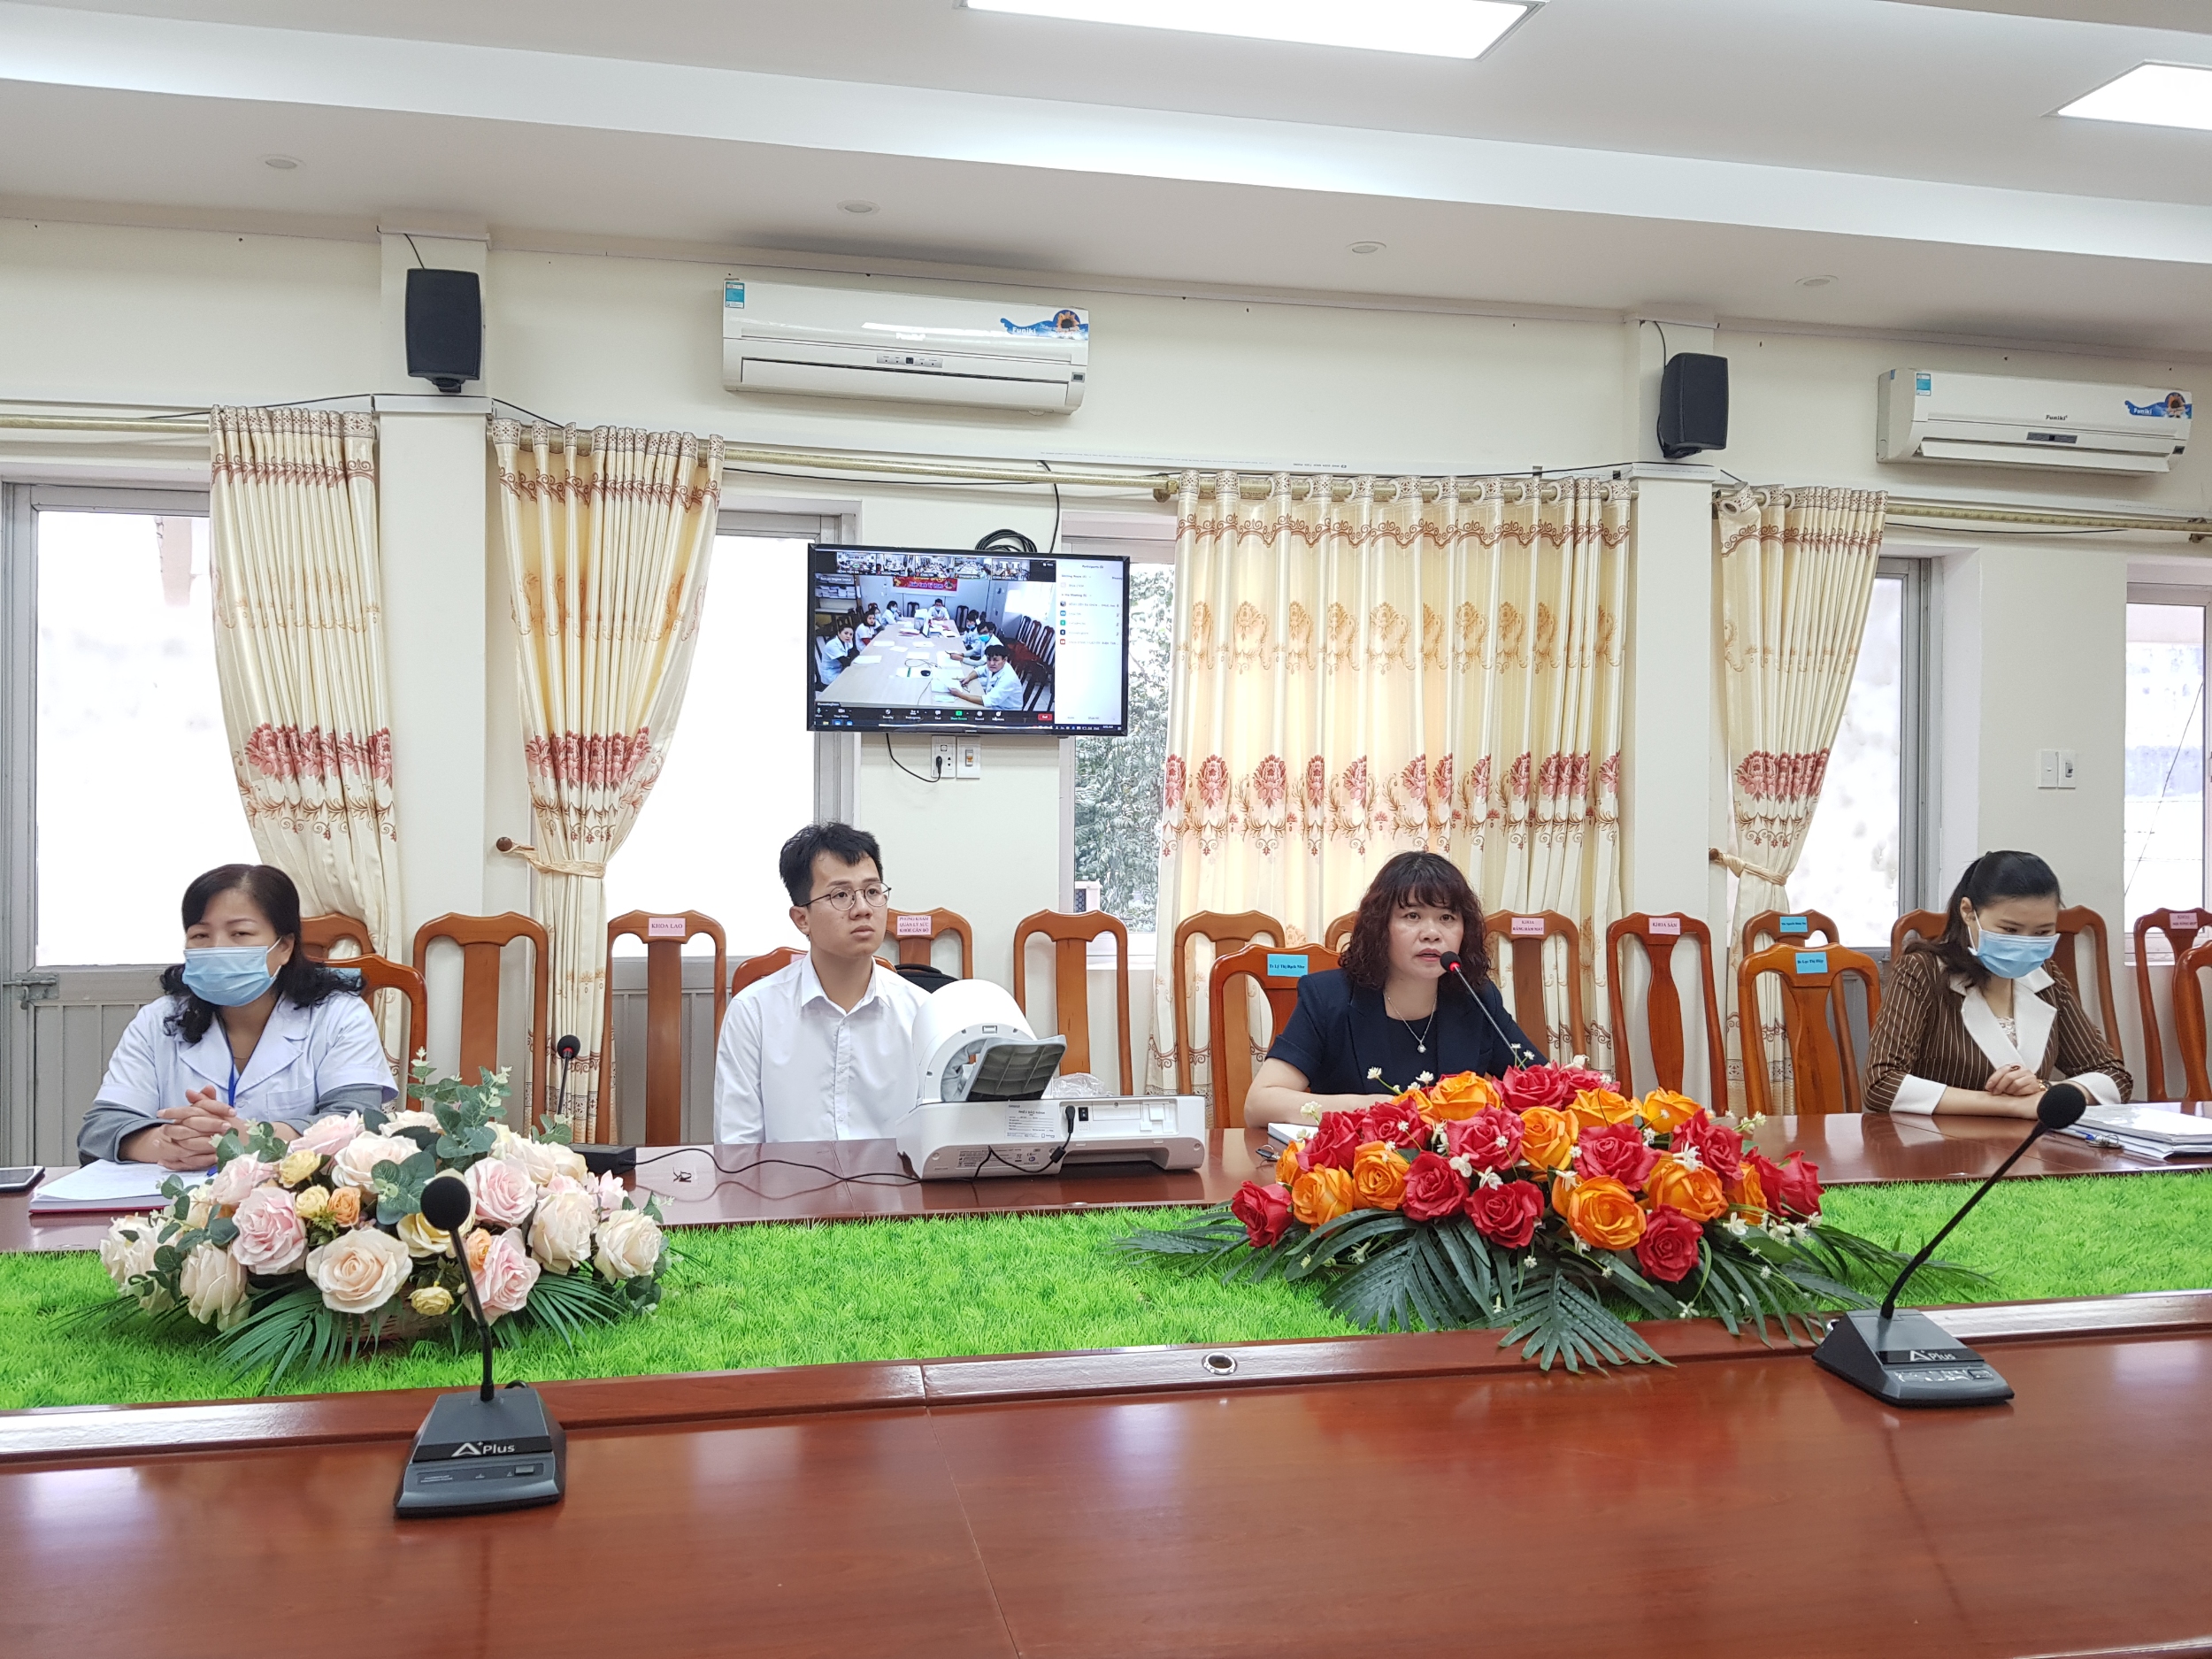 Lãnh đạo bệnh viện cùng chuyên viên điều phối dự án Servier Vietnam trao tặng máy đo huyết áp tại buổi giao ban trực tuyến toàn viện.